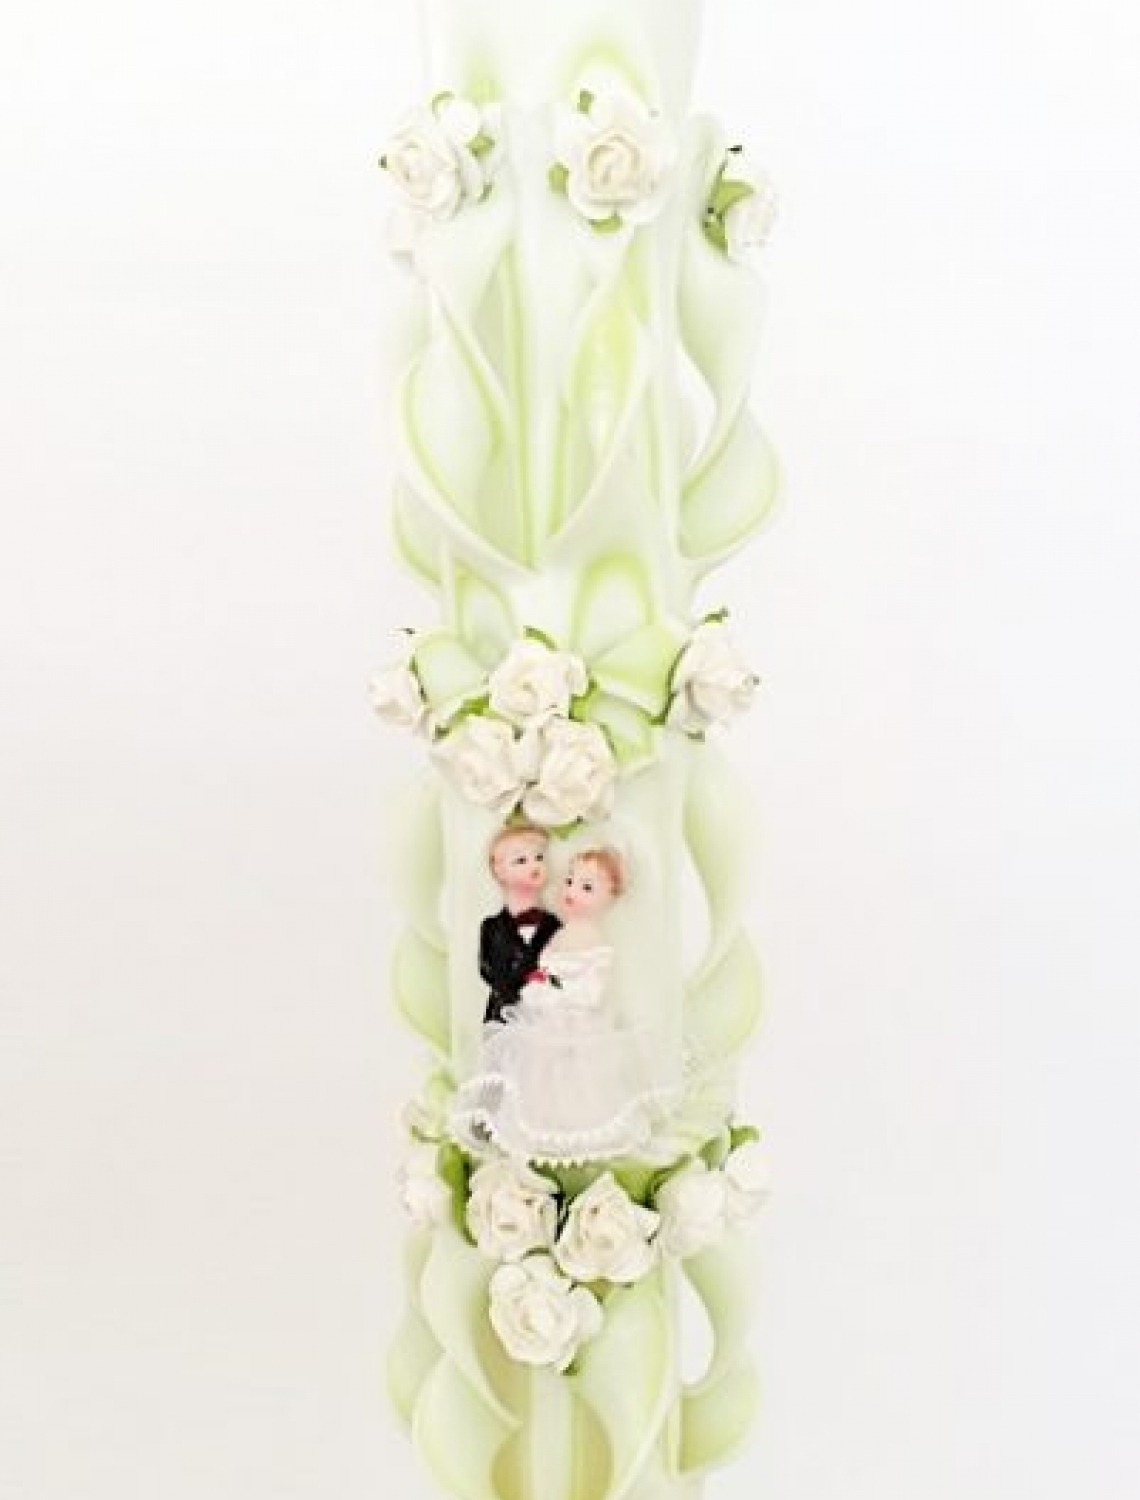 Lumanare nunta verde fistic 120 cm sculptata la ambele capete